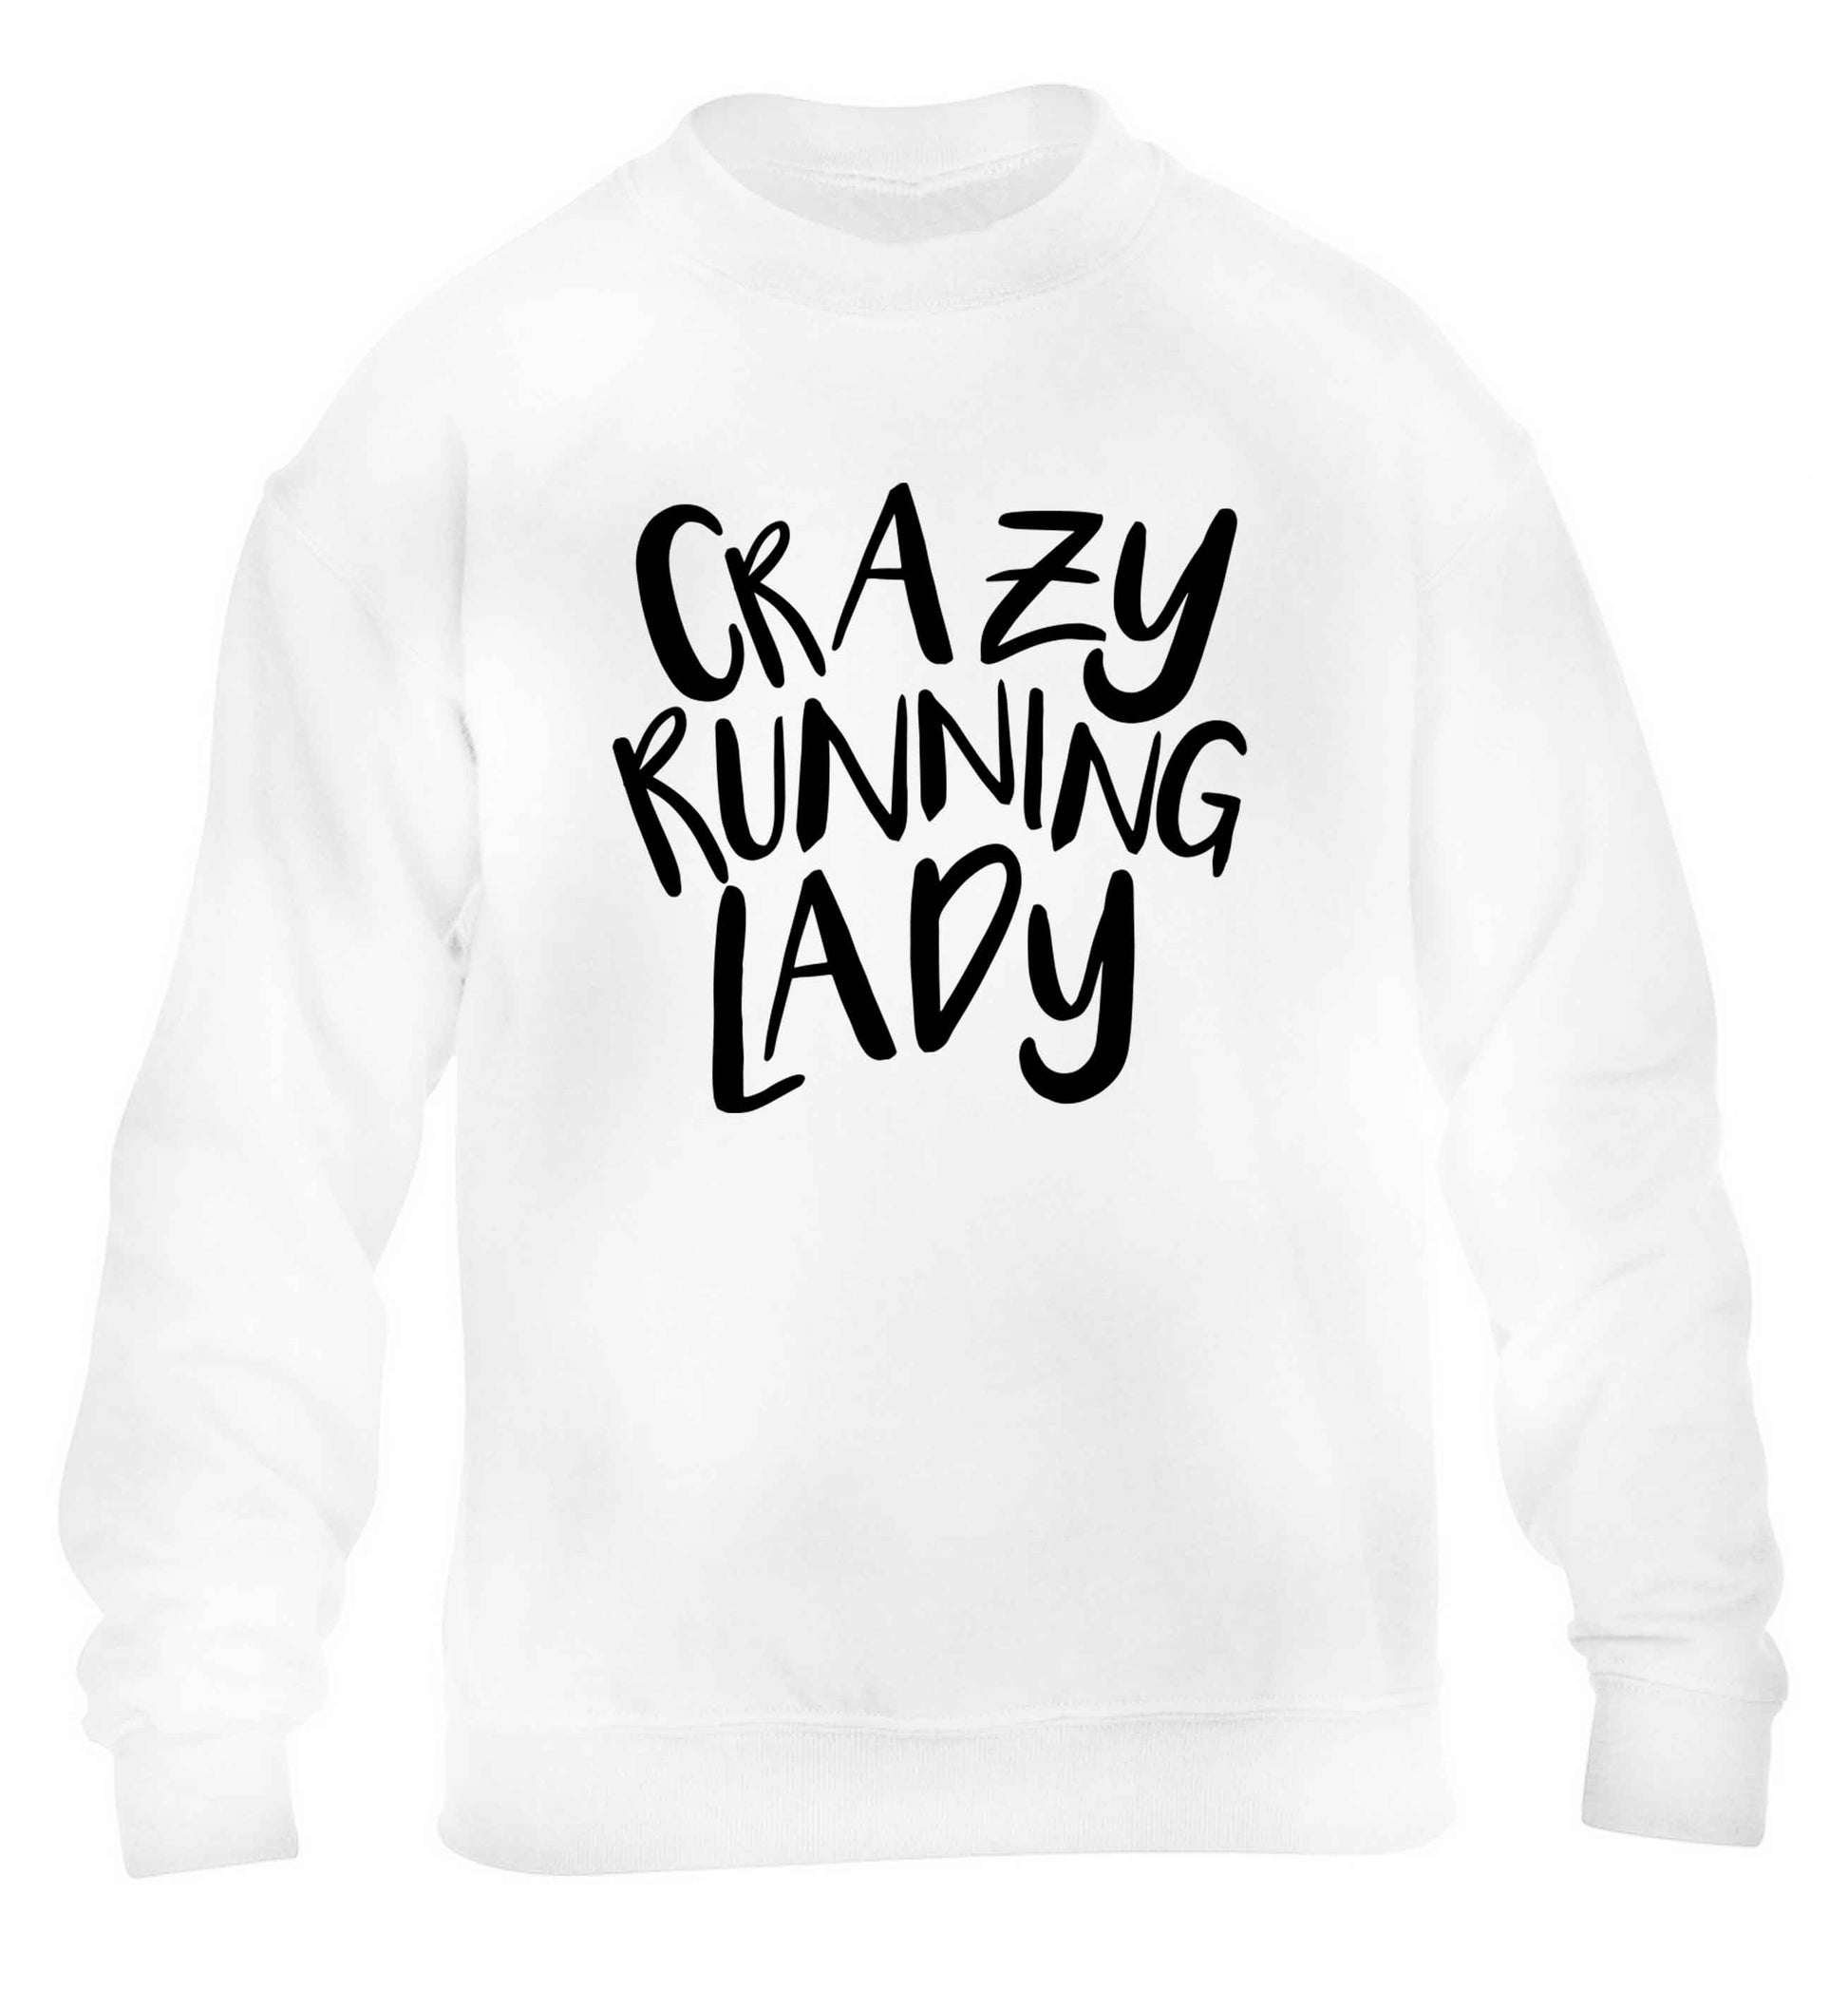 Crazy running lady children's white sweater 12-13 Years